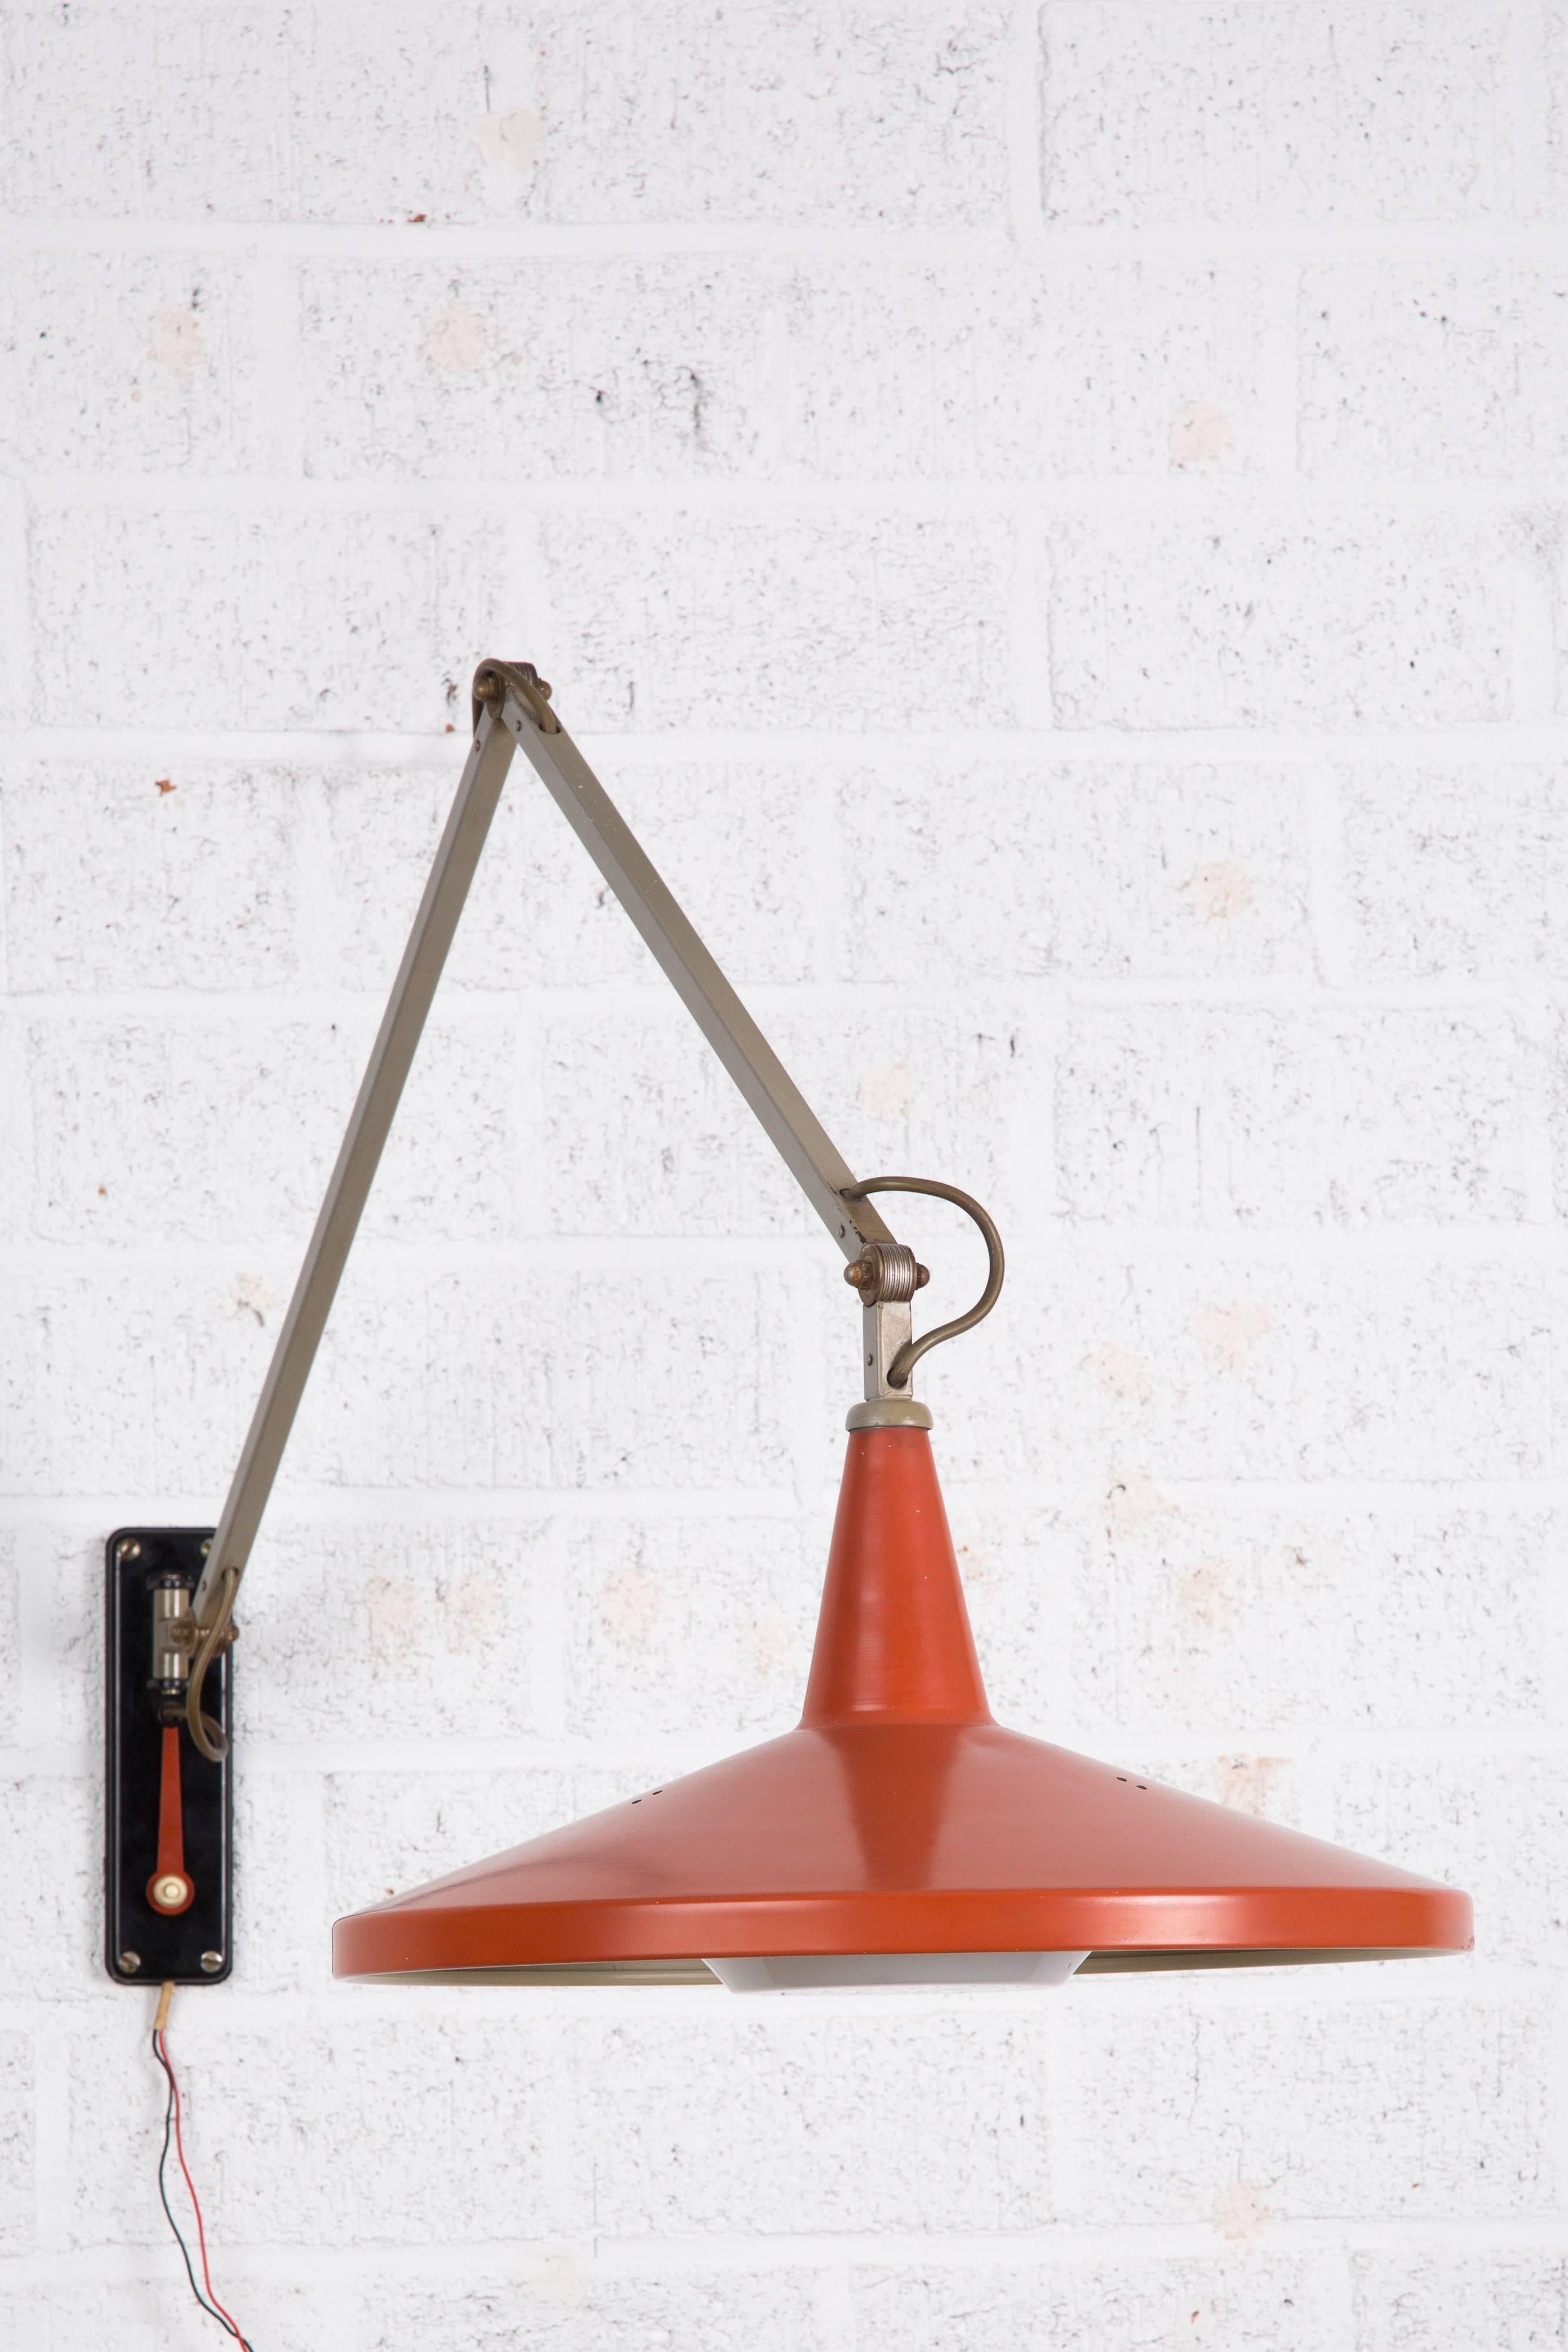 Panama Gispen Rietveld. Diese Gispen Lampe wurde von Wim Rietveld und AR Cordemeijer entworfen. Es handelt sich um eine Wandleuchte. 
Das rote Werkzeug kann verwendet werden, um die Lampe neu zu positionieren.
Die Lampe hat einen neuen